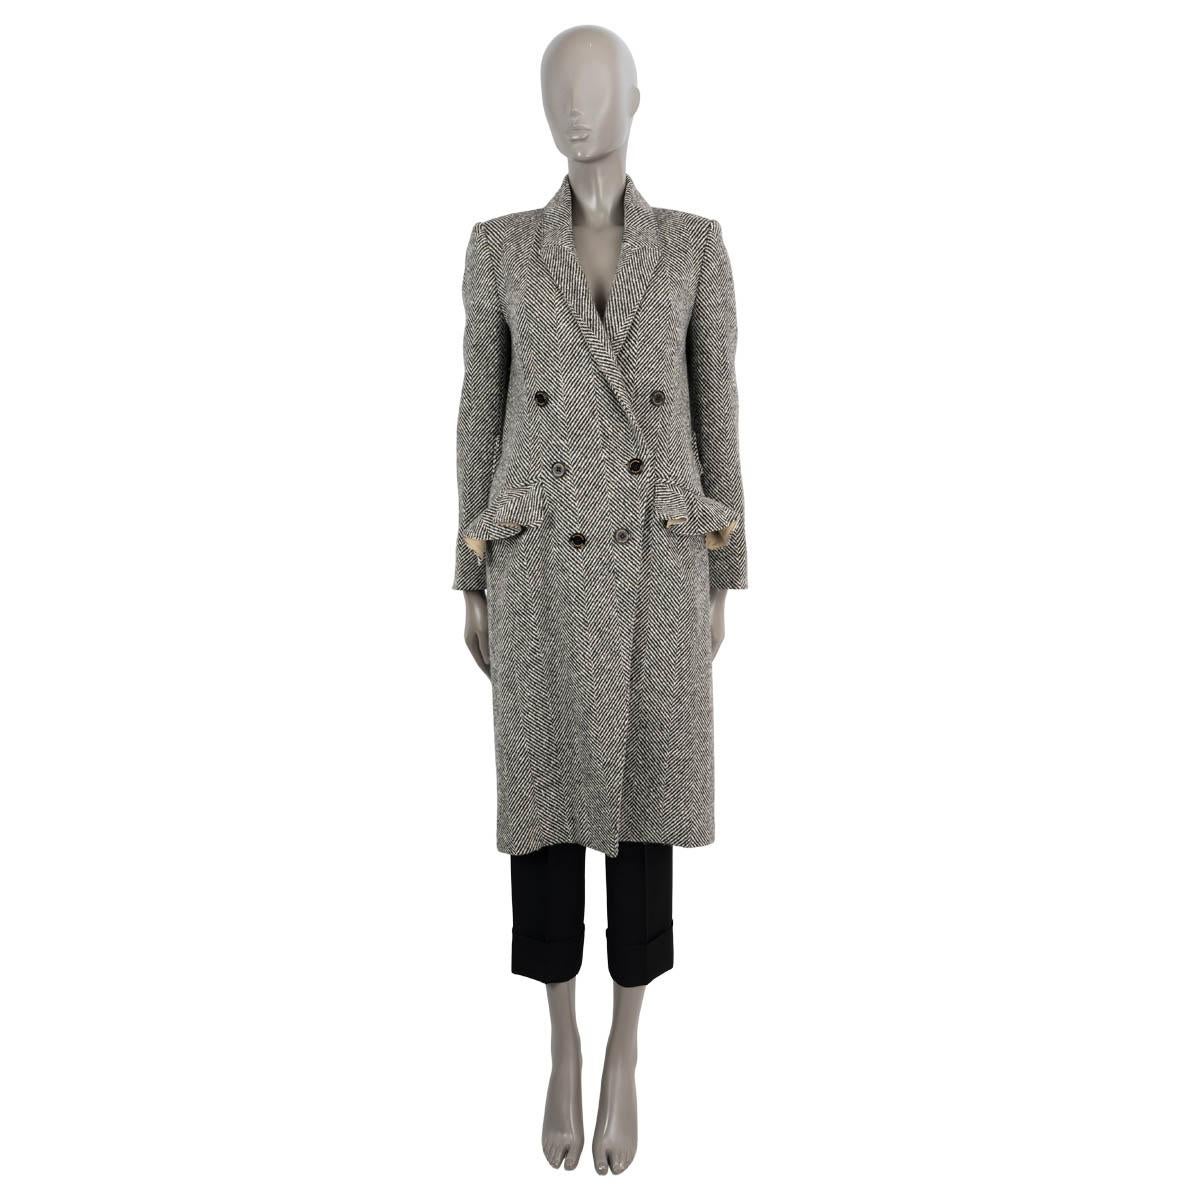 Manteau à double boutonnage en laine tweed à chevrons noire et blanche, 100% authentique de Burberry Coates. Il présente une coupe ajustée, deux poches à rabat volantées, des poignets boutonnés et une ceinture à la taille dans le dos. Il s'ouvre sur